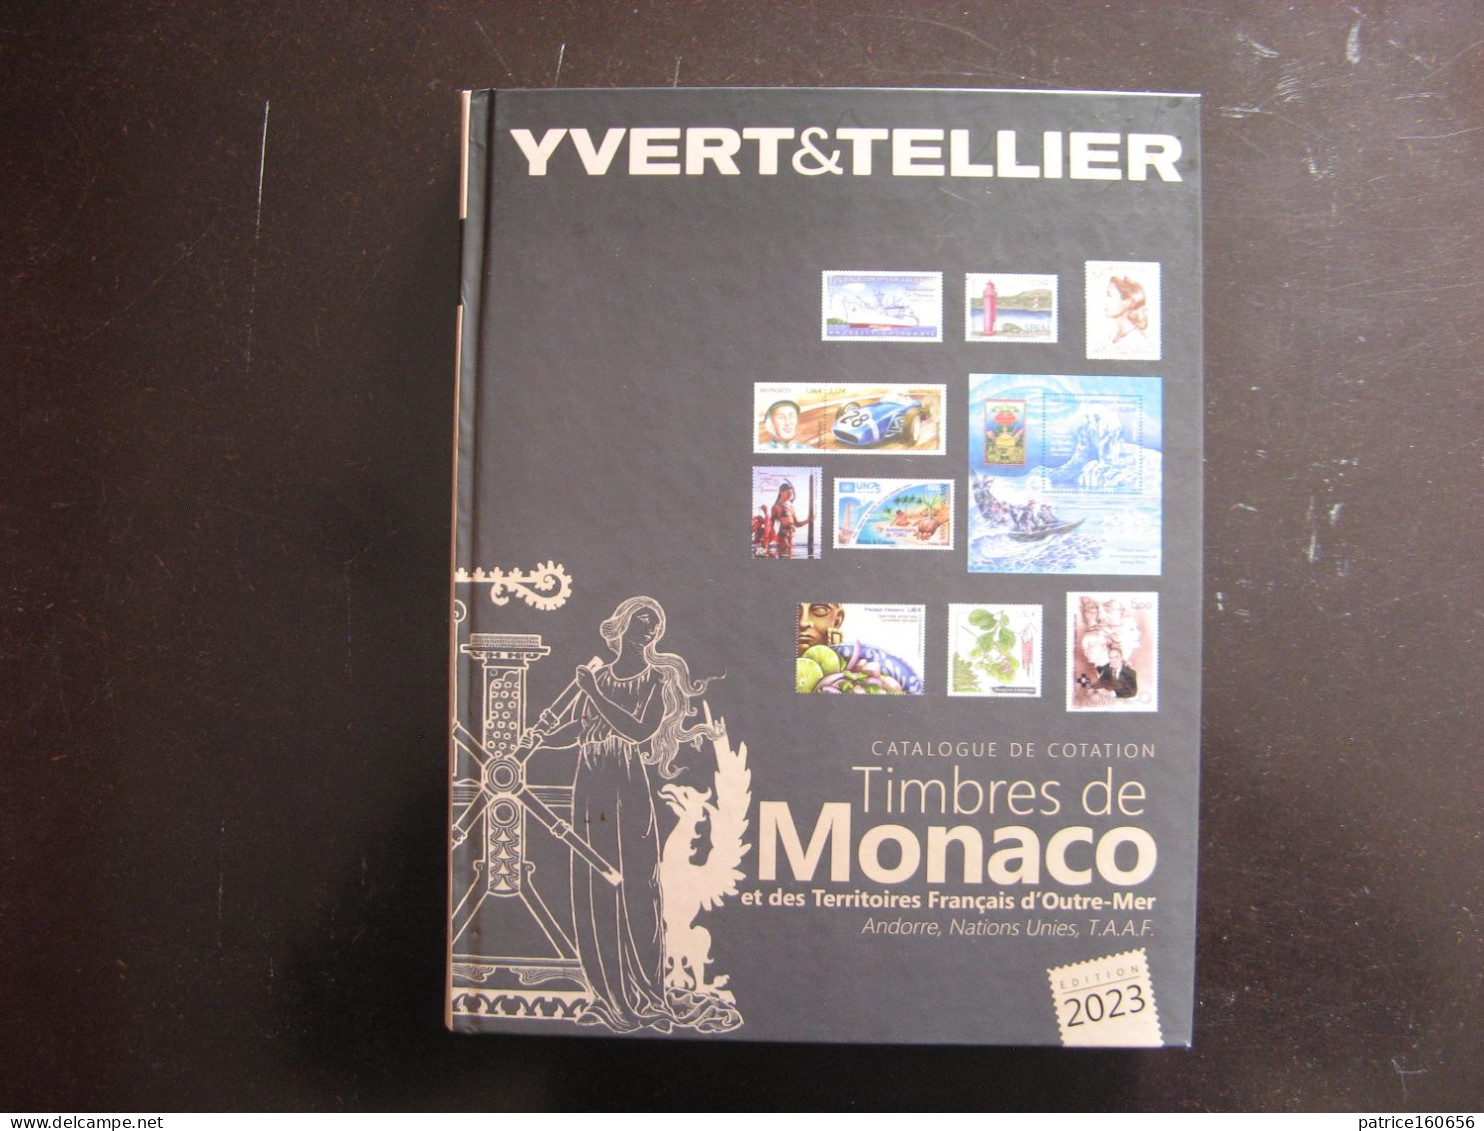 CATALOGUE YVERT ET TELLIER Des Timbres De Monaco, Andorre, N.U. Et Territoires Français D'Outre-Mer. Edition De 2023 . - Bibliographies